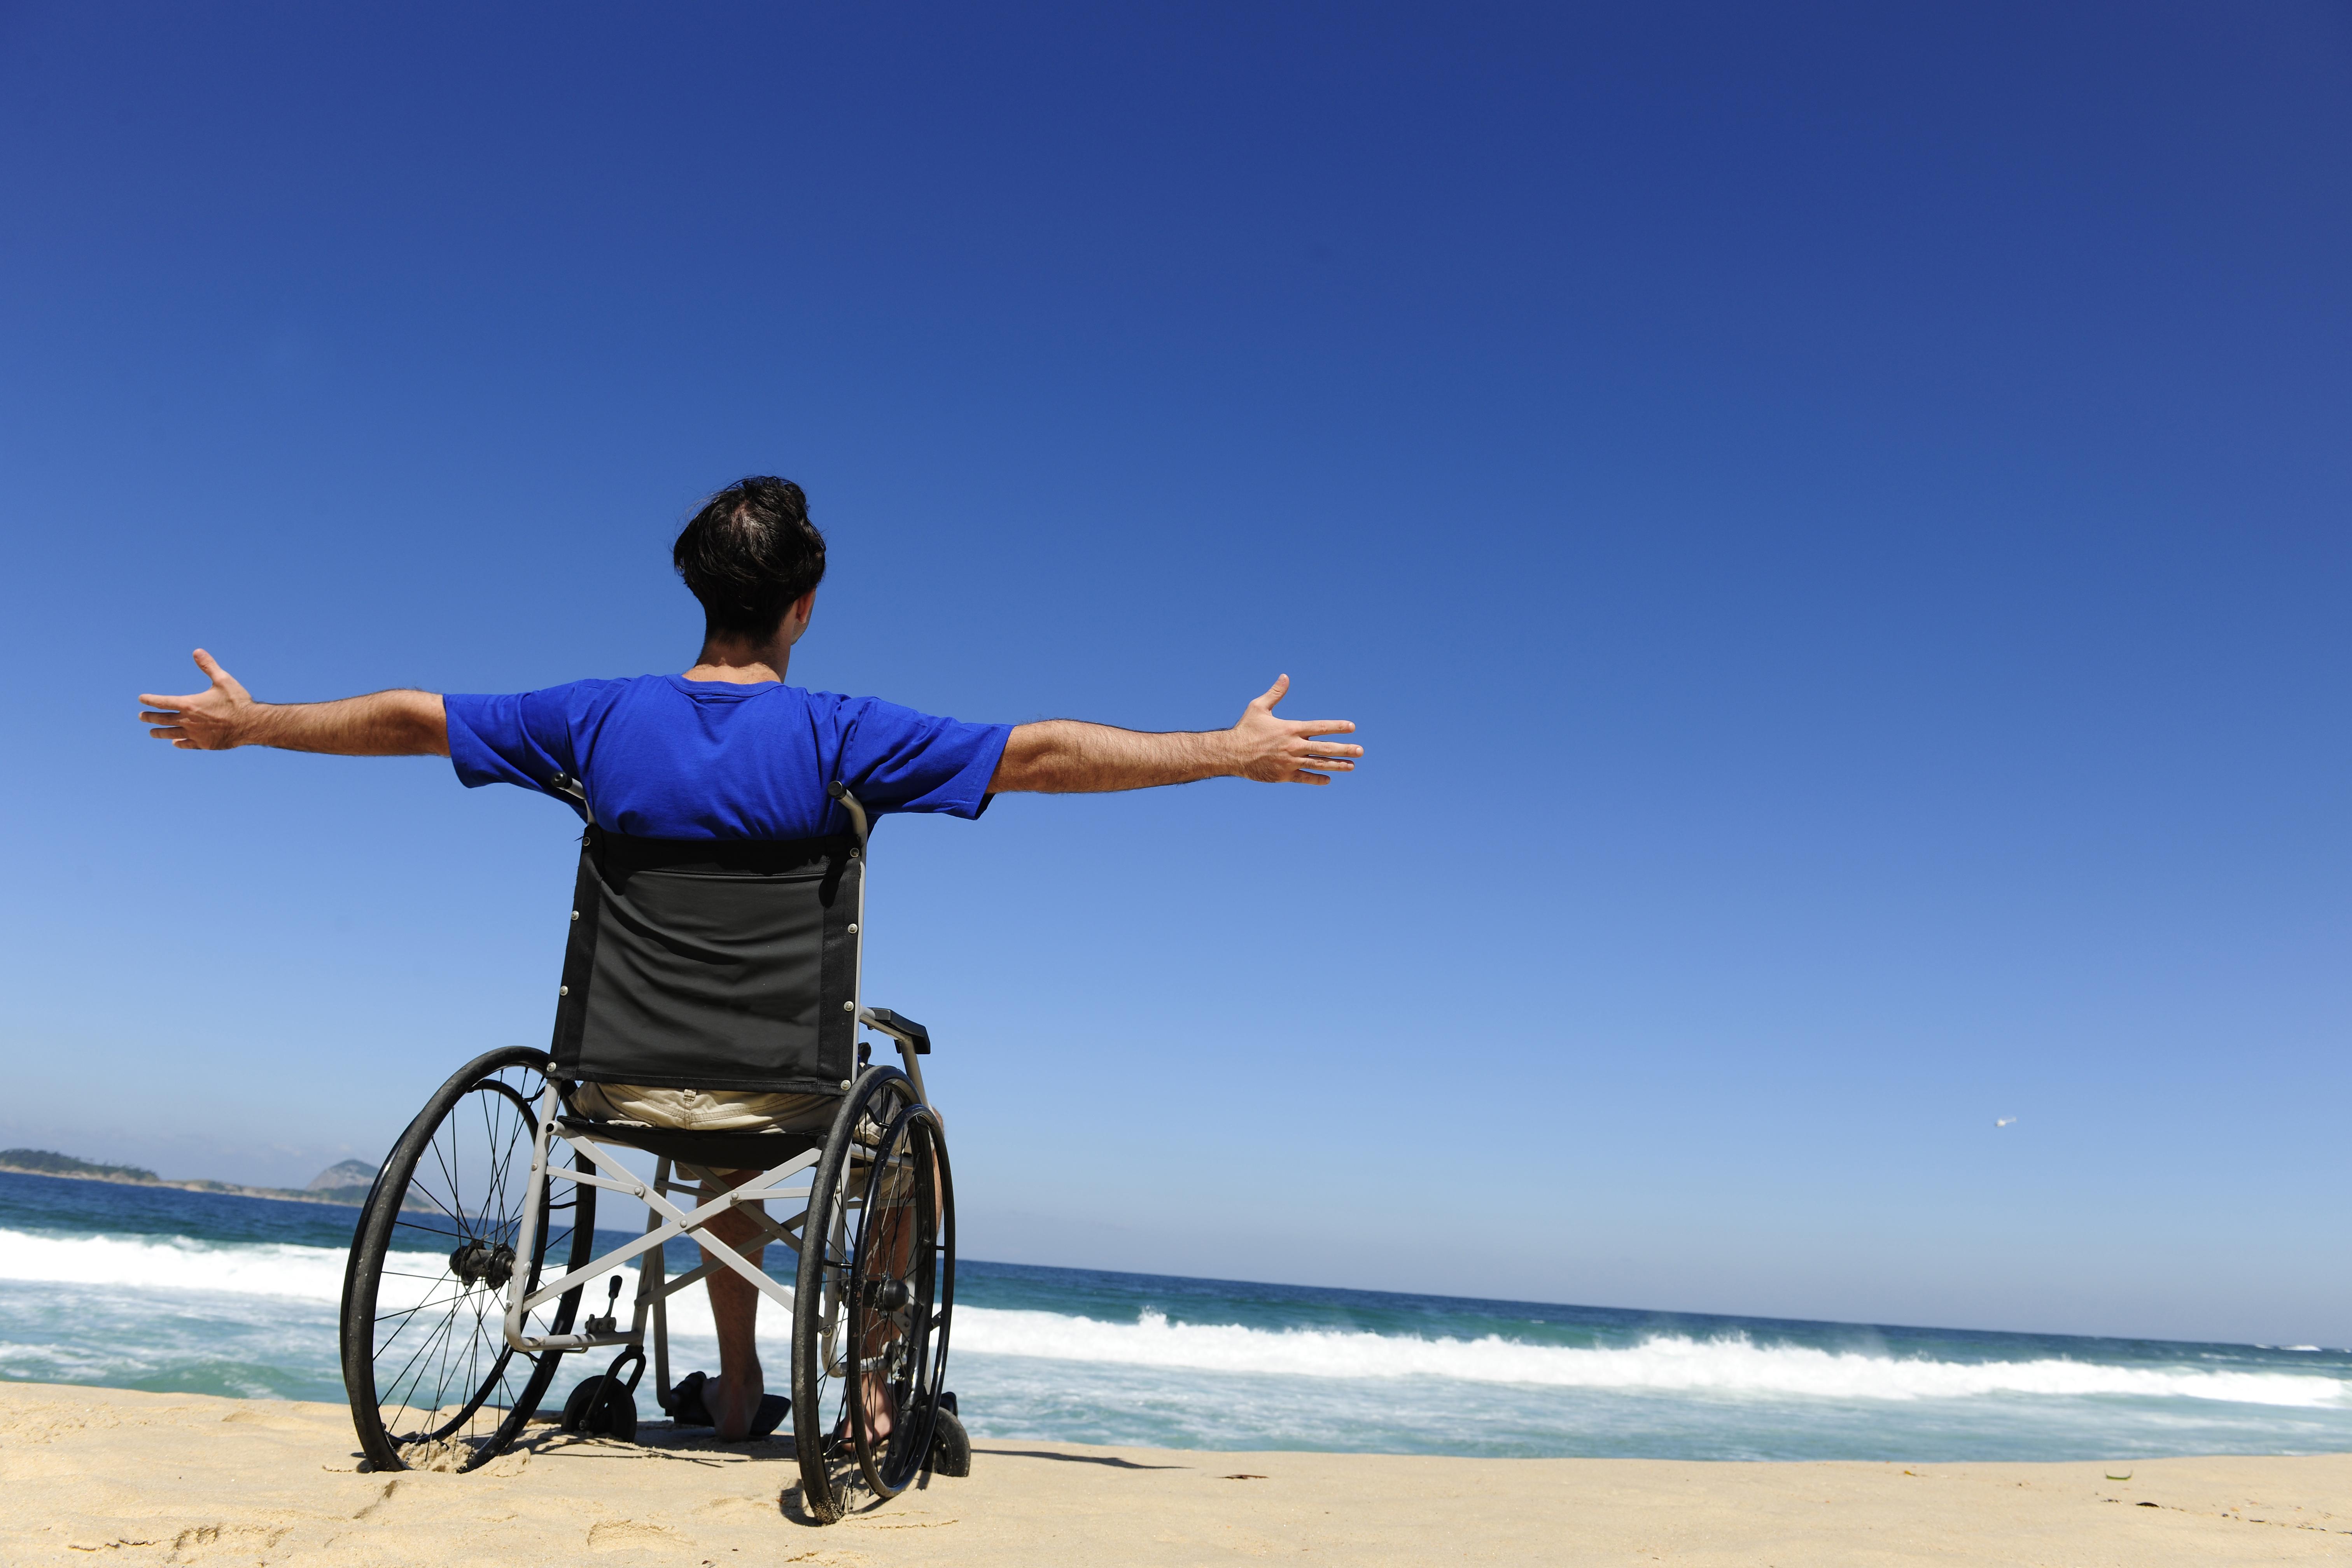 26 в жизни человека. Инвалид. Люди с ограниченными возможностями. Люди с инвалидностью. Инвалидная коляска для путешествий.